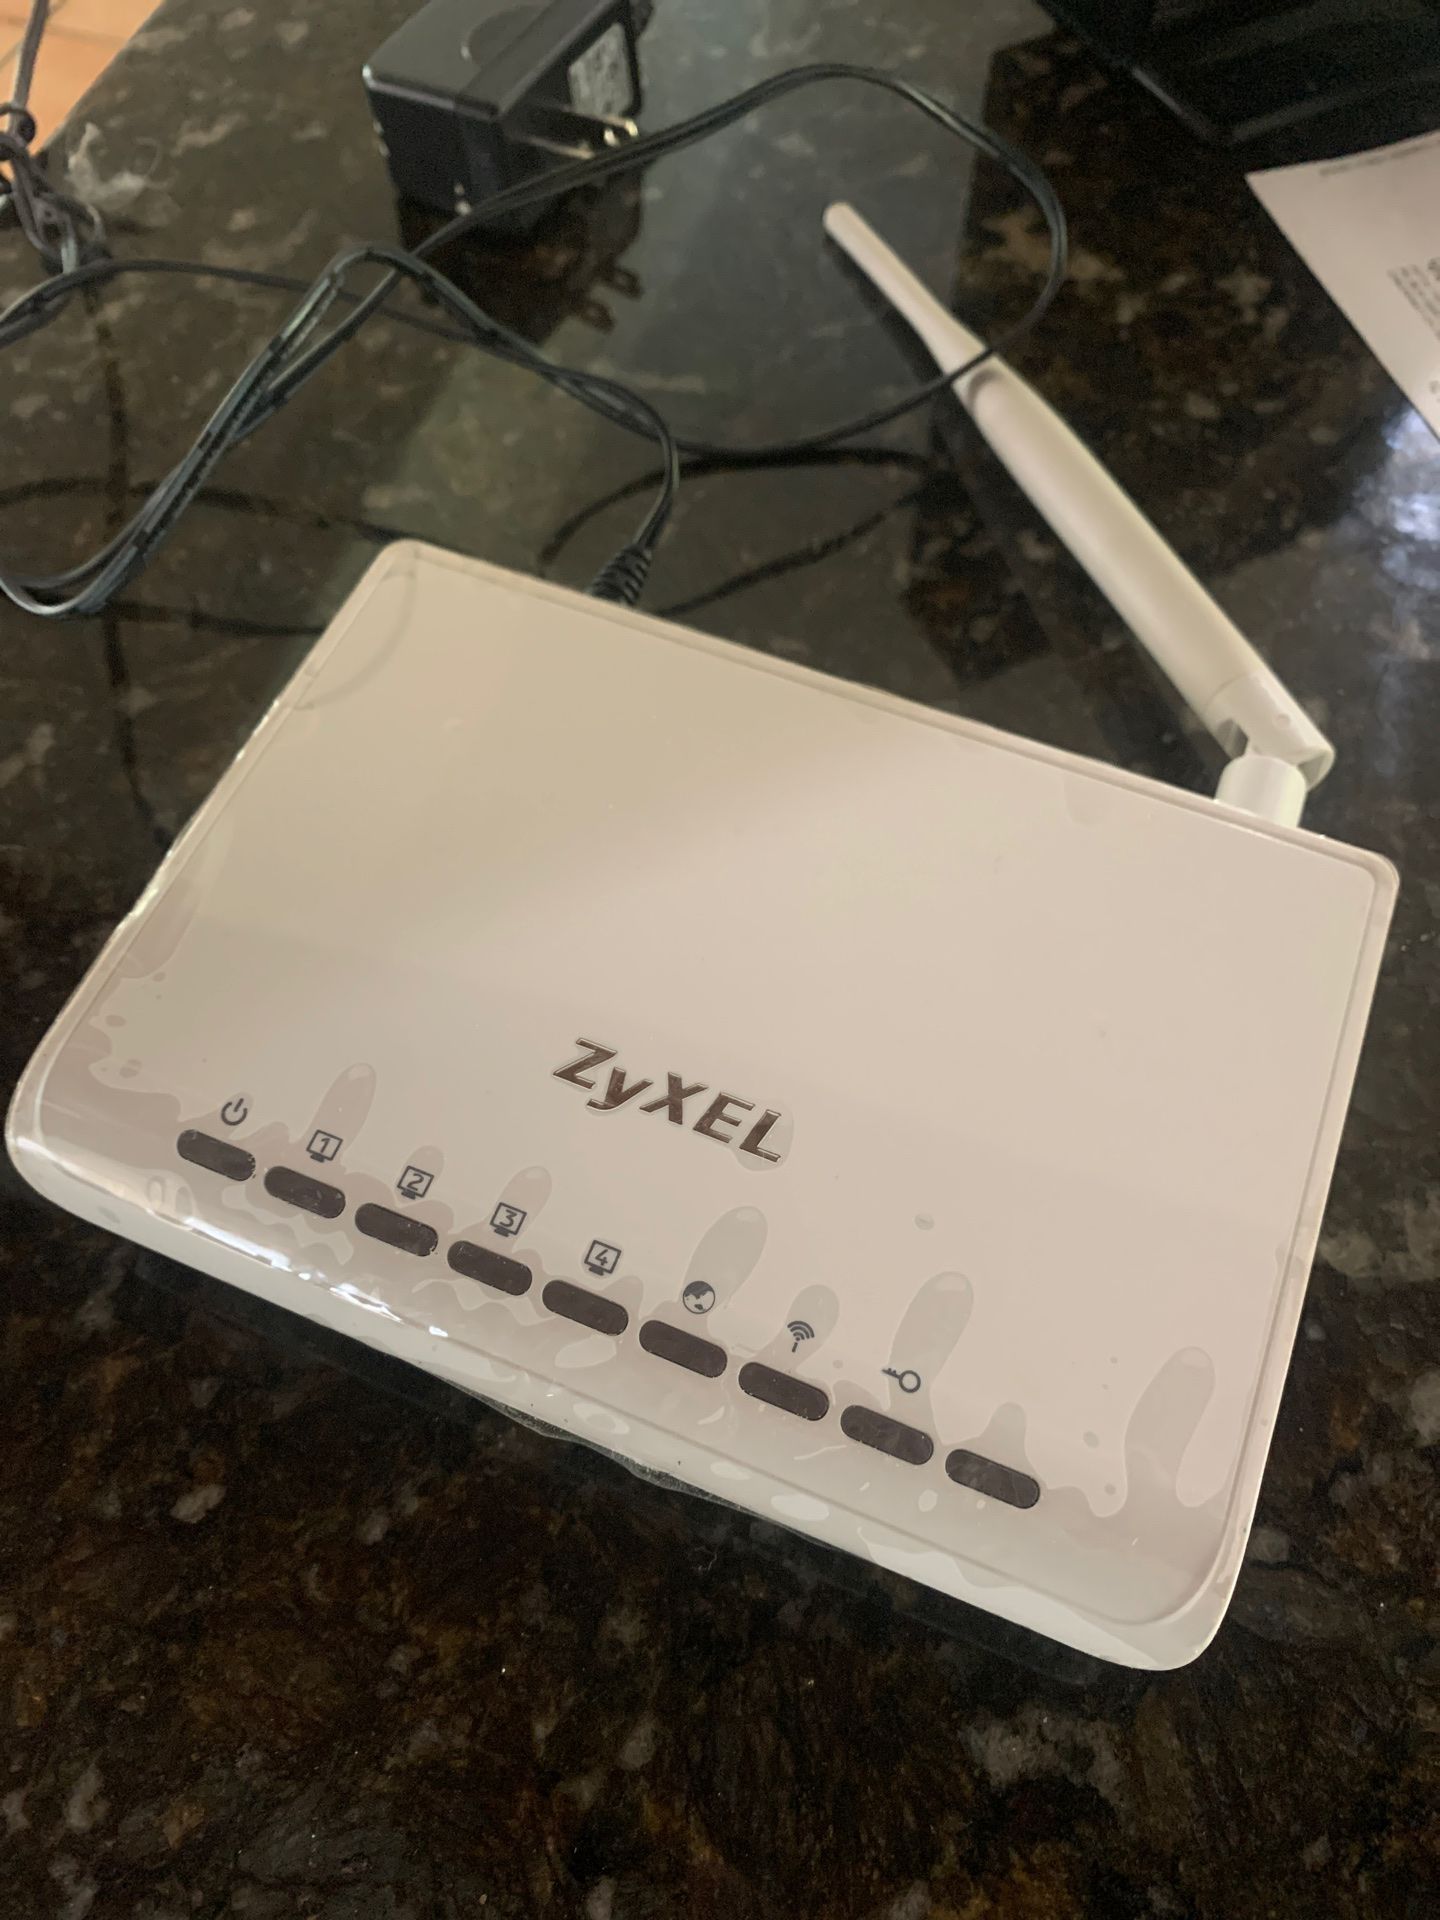 Zyxel Wireless Internet router